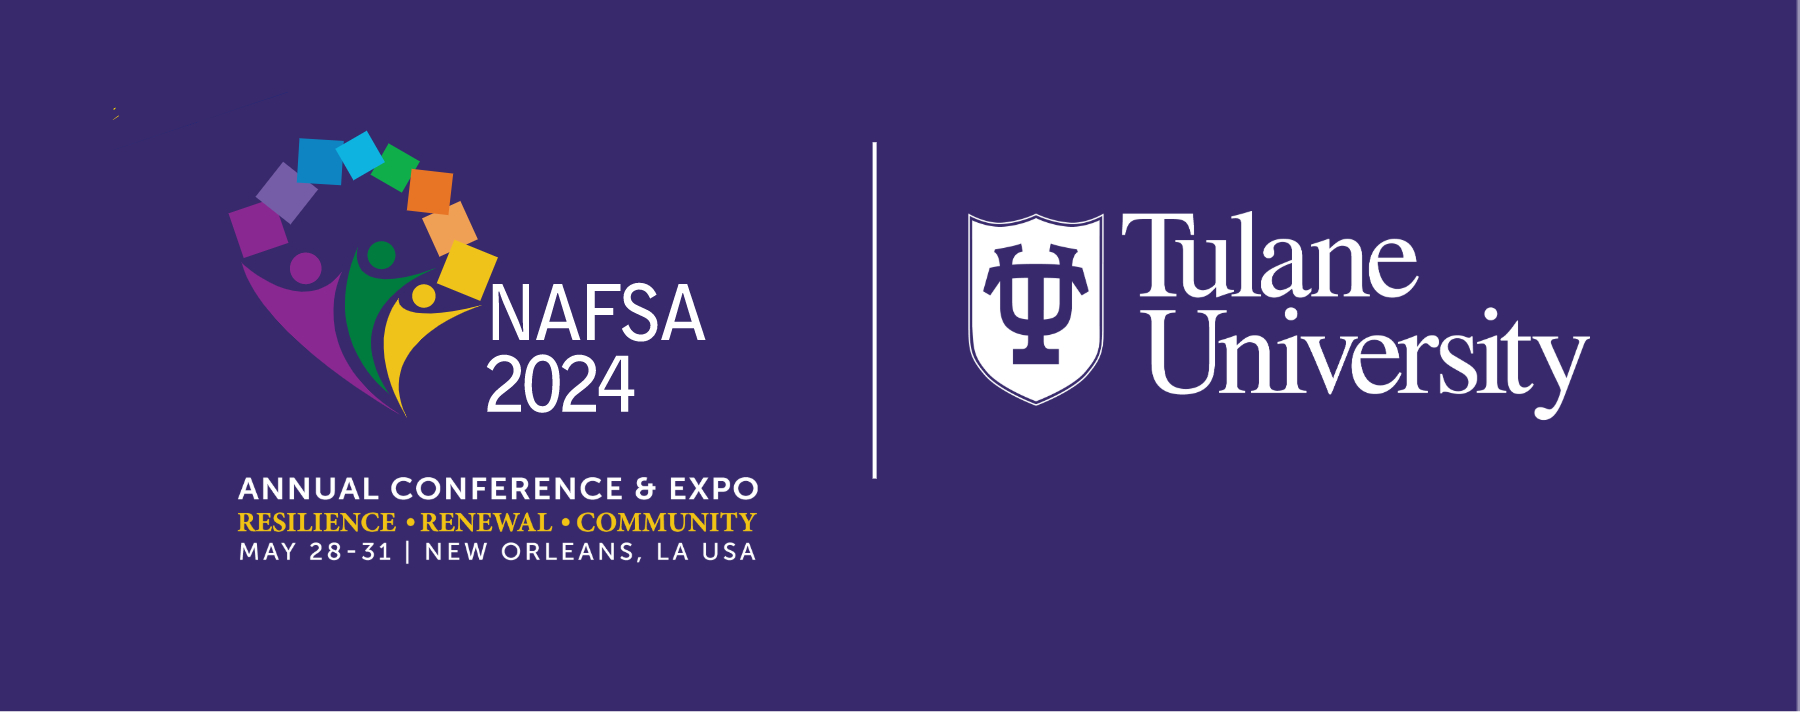 Tulane & NAFSA 2024 Conference